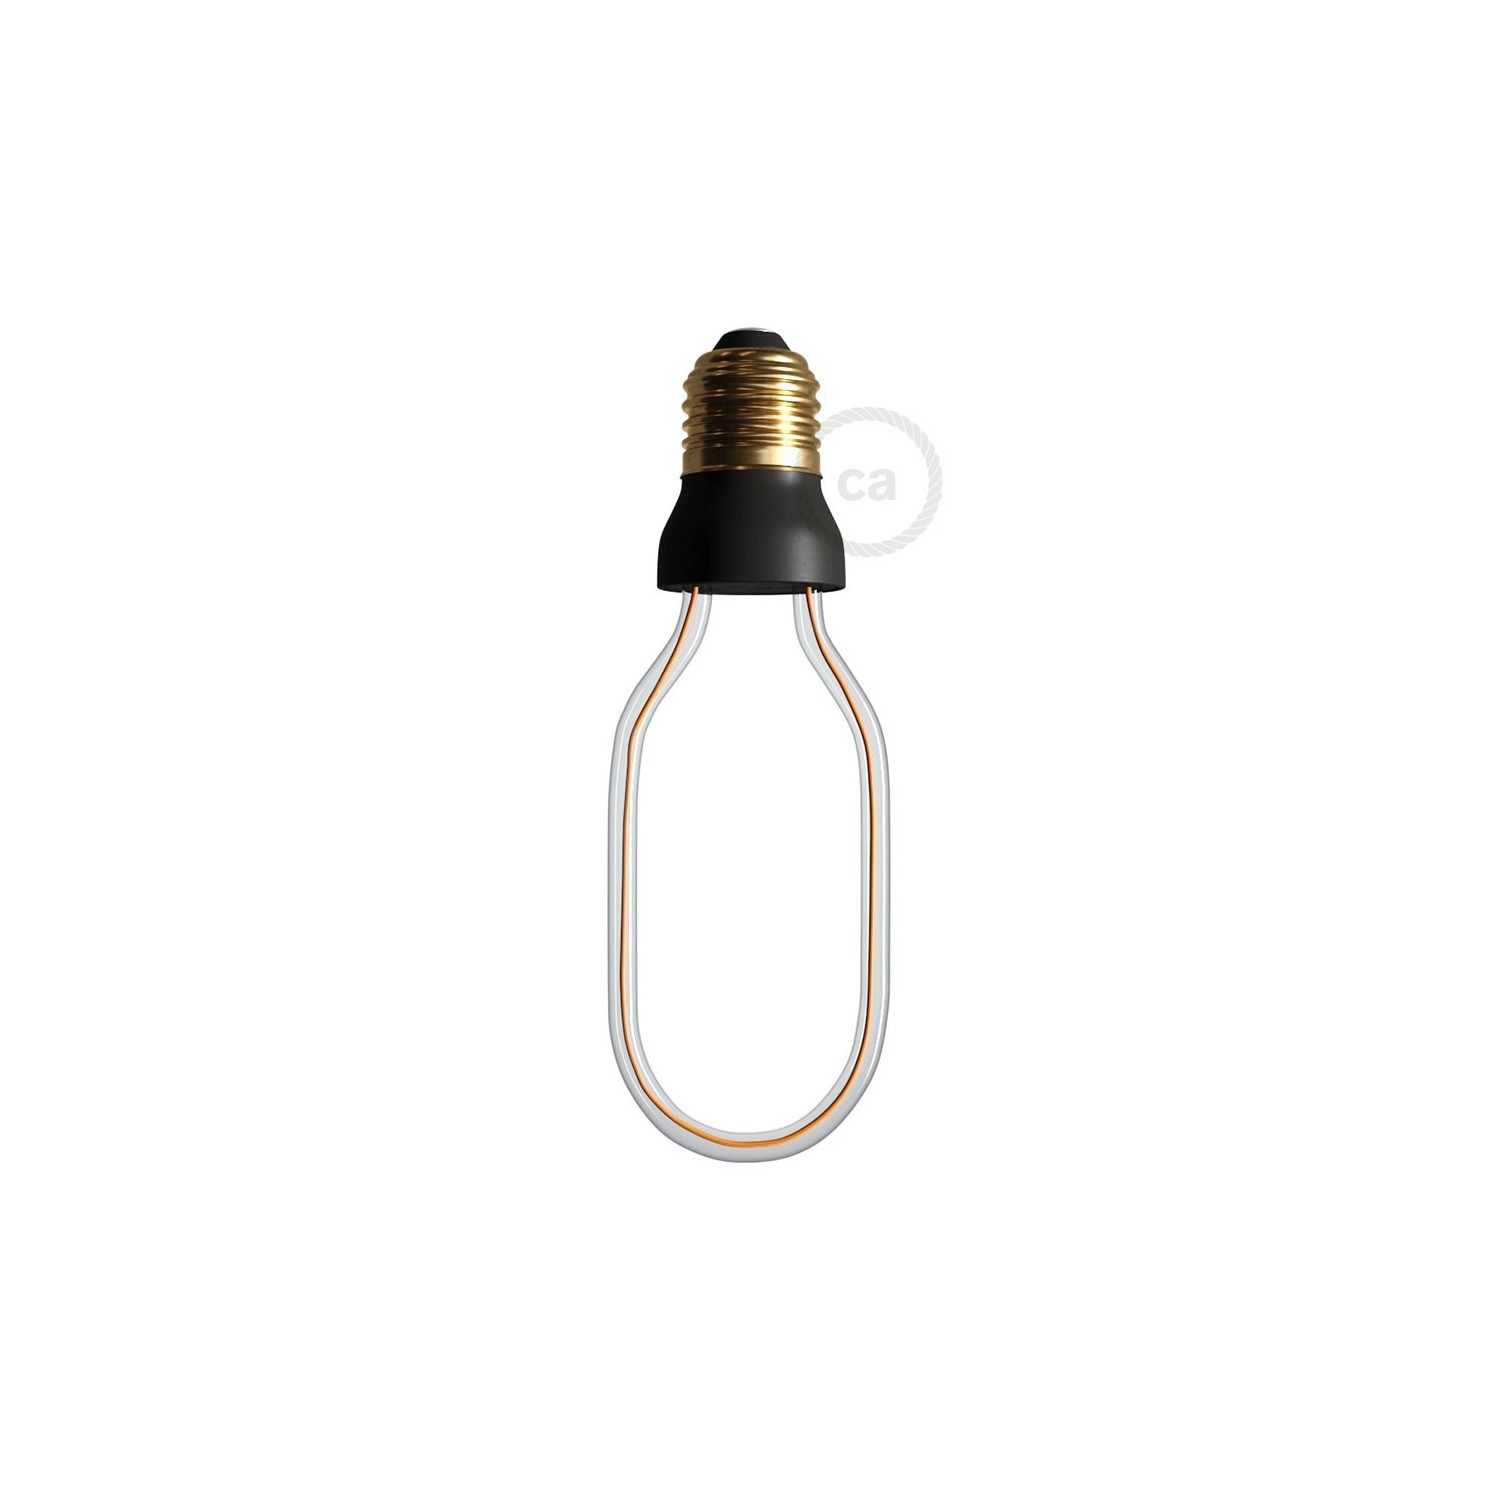 LED Art Tube Light Bulb 8W 300Lm E27 2200K Dimmable